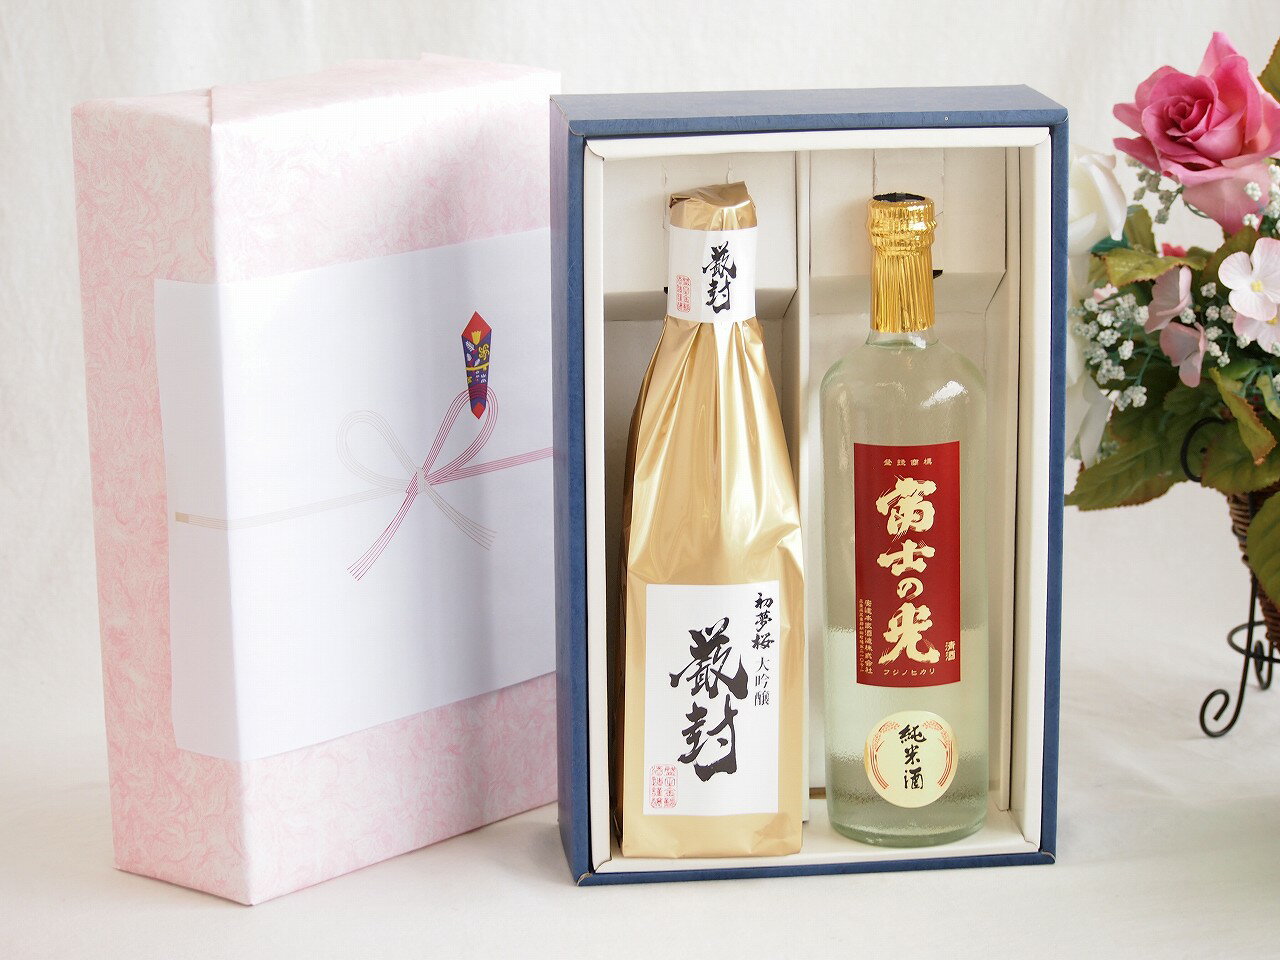 贅沢な日本酒感謝ボックス2本セット(金鯱初夢桜 厳封大吟醸(愛知) 富士の光純米(三重)) 720ml×2本